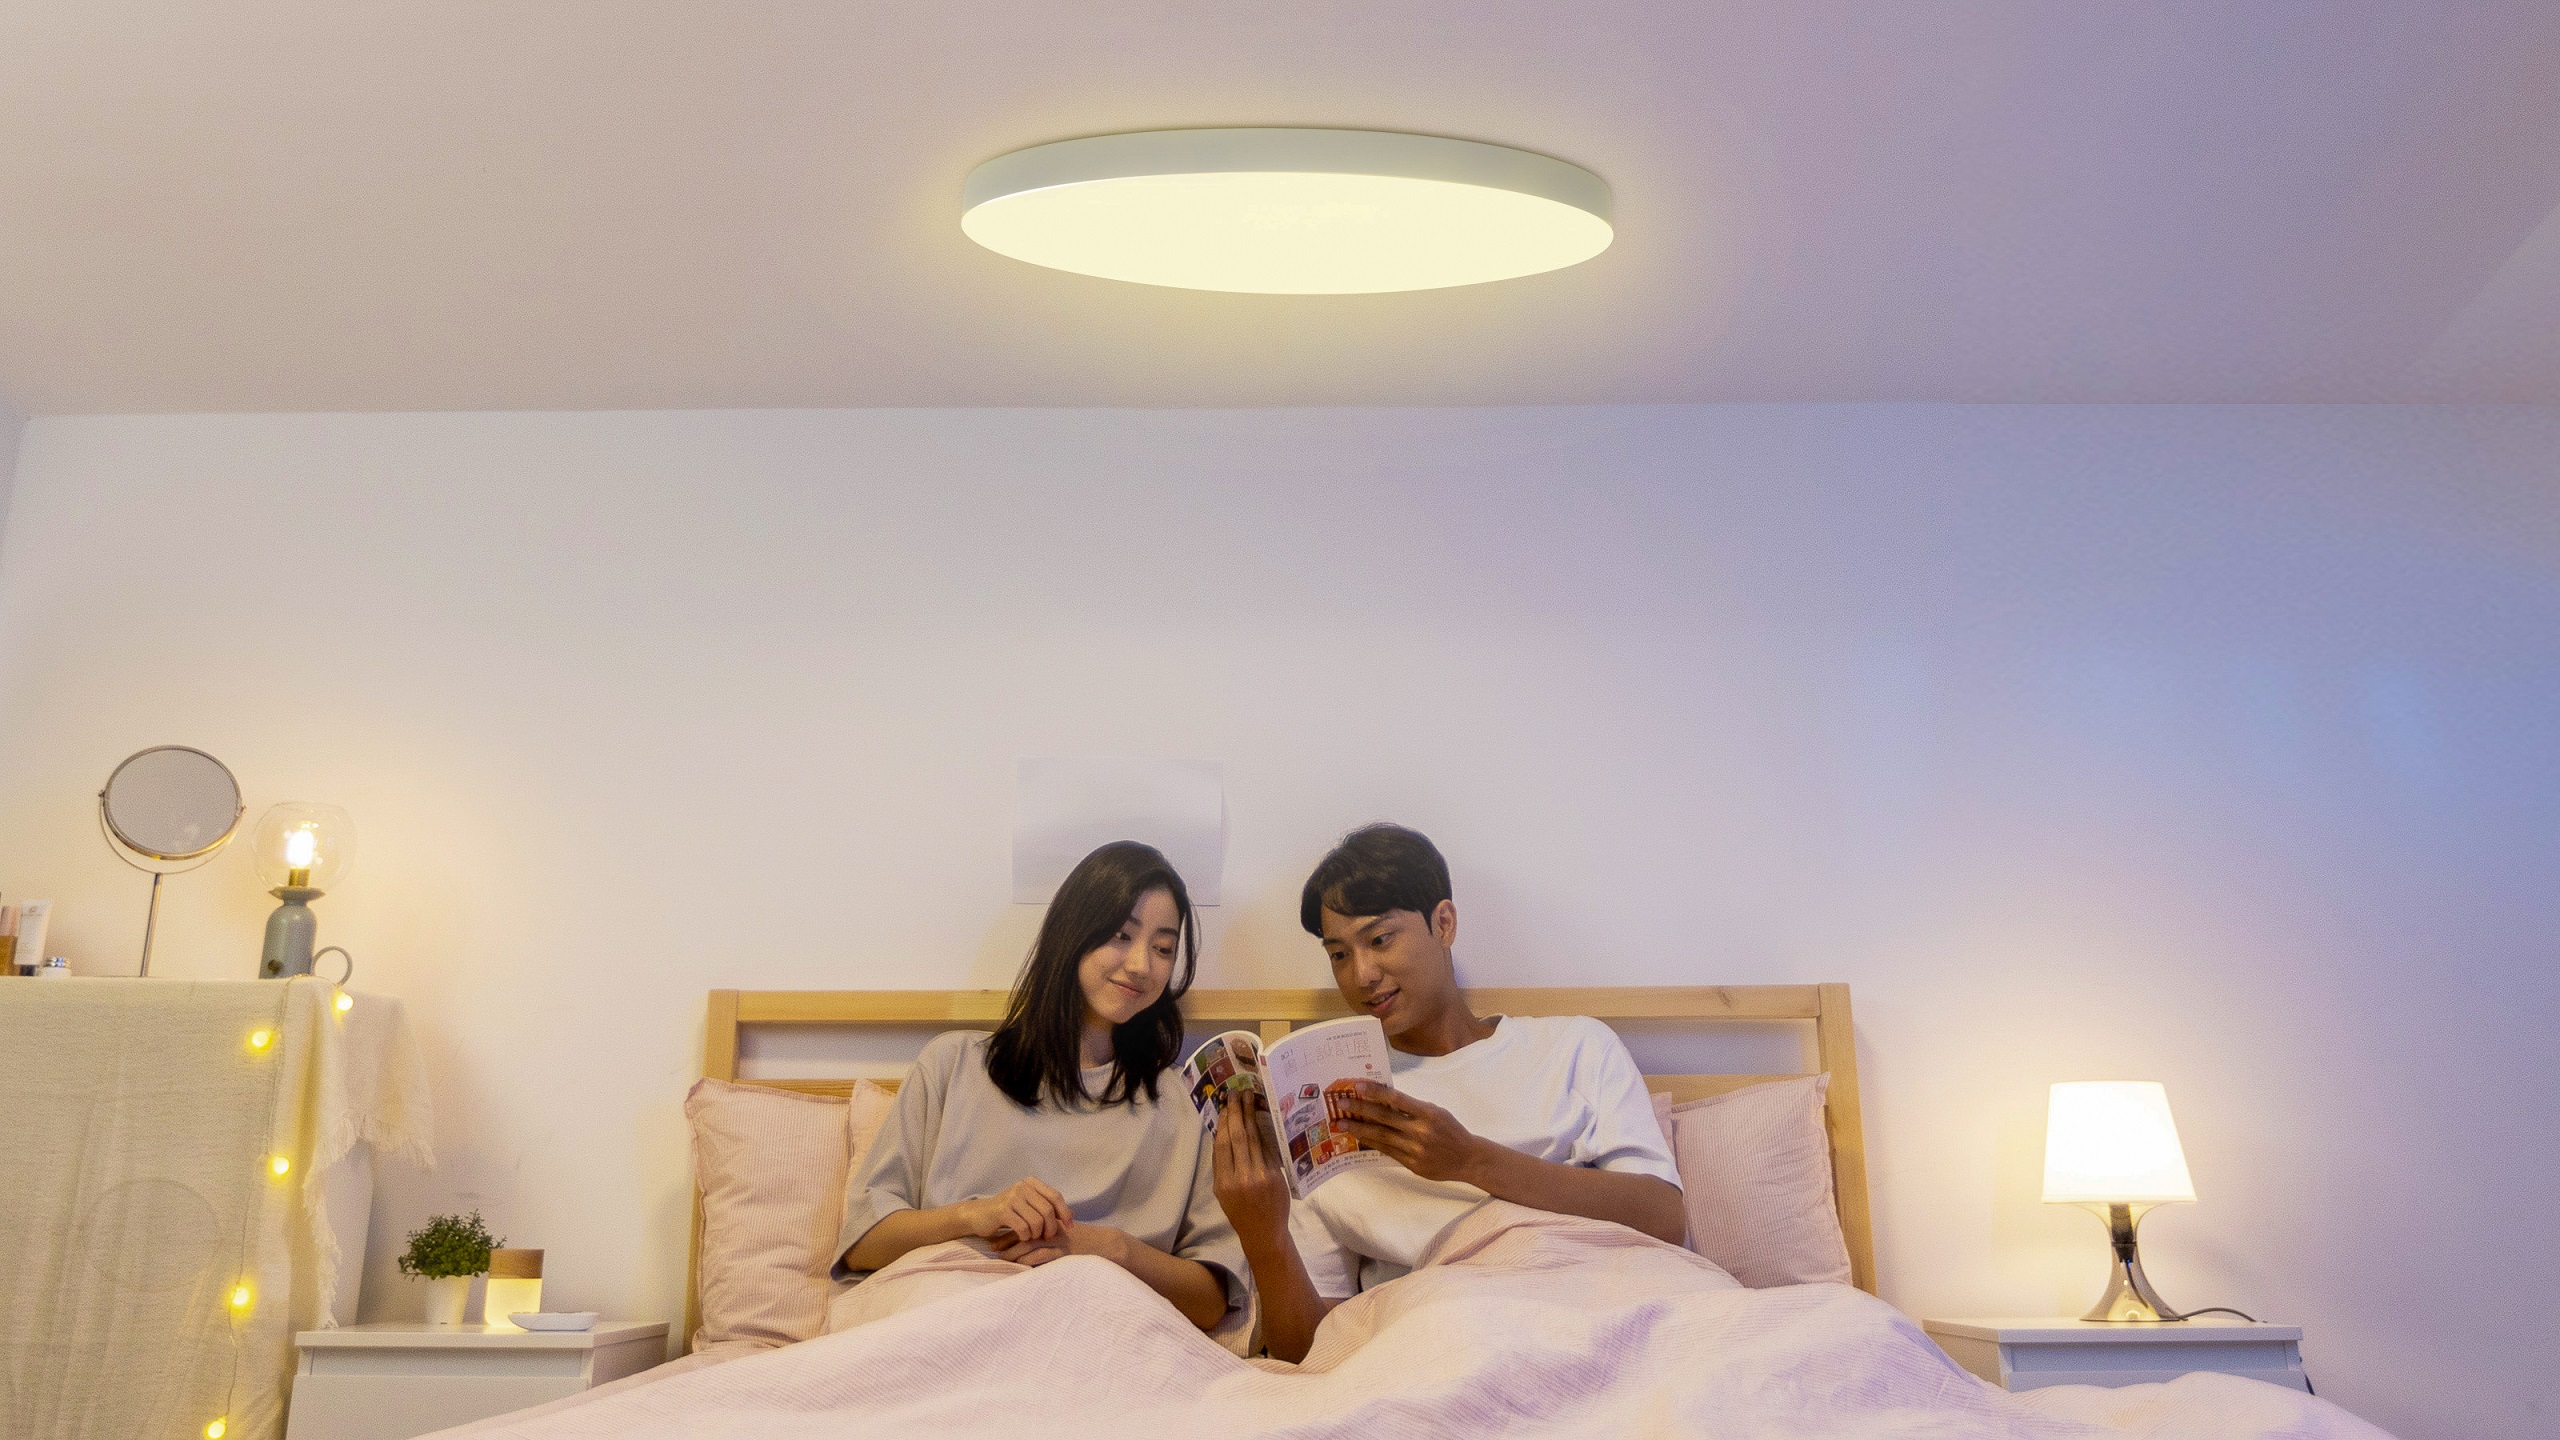 「台灣森下股份有限公司」提案的情境式調光LED吸頂燈導入日本技術，由台灣設計、研發與製造(MIT)，可有效節省電費開支並減少碳排放。